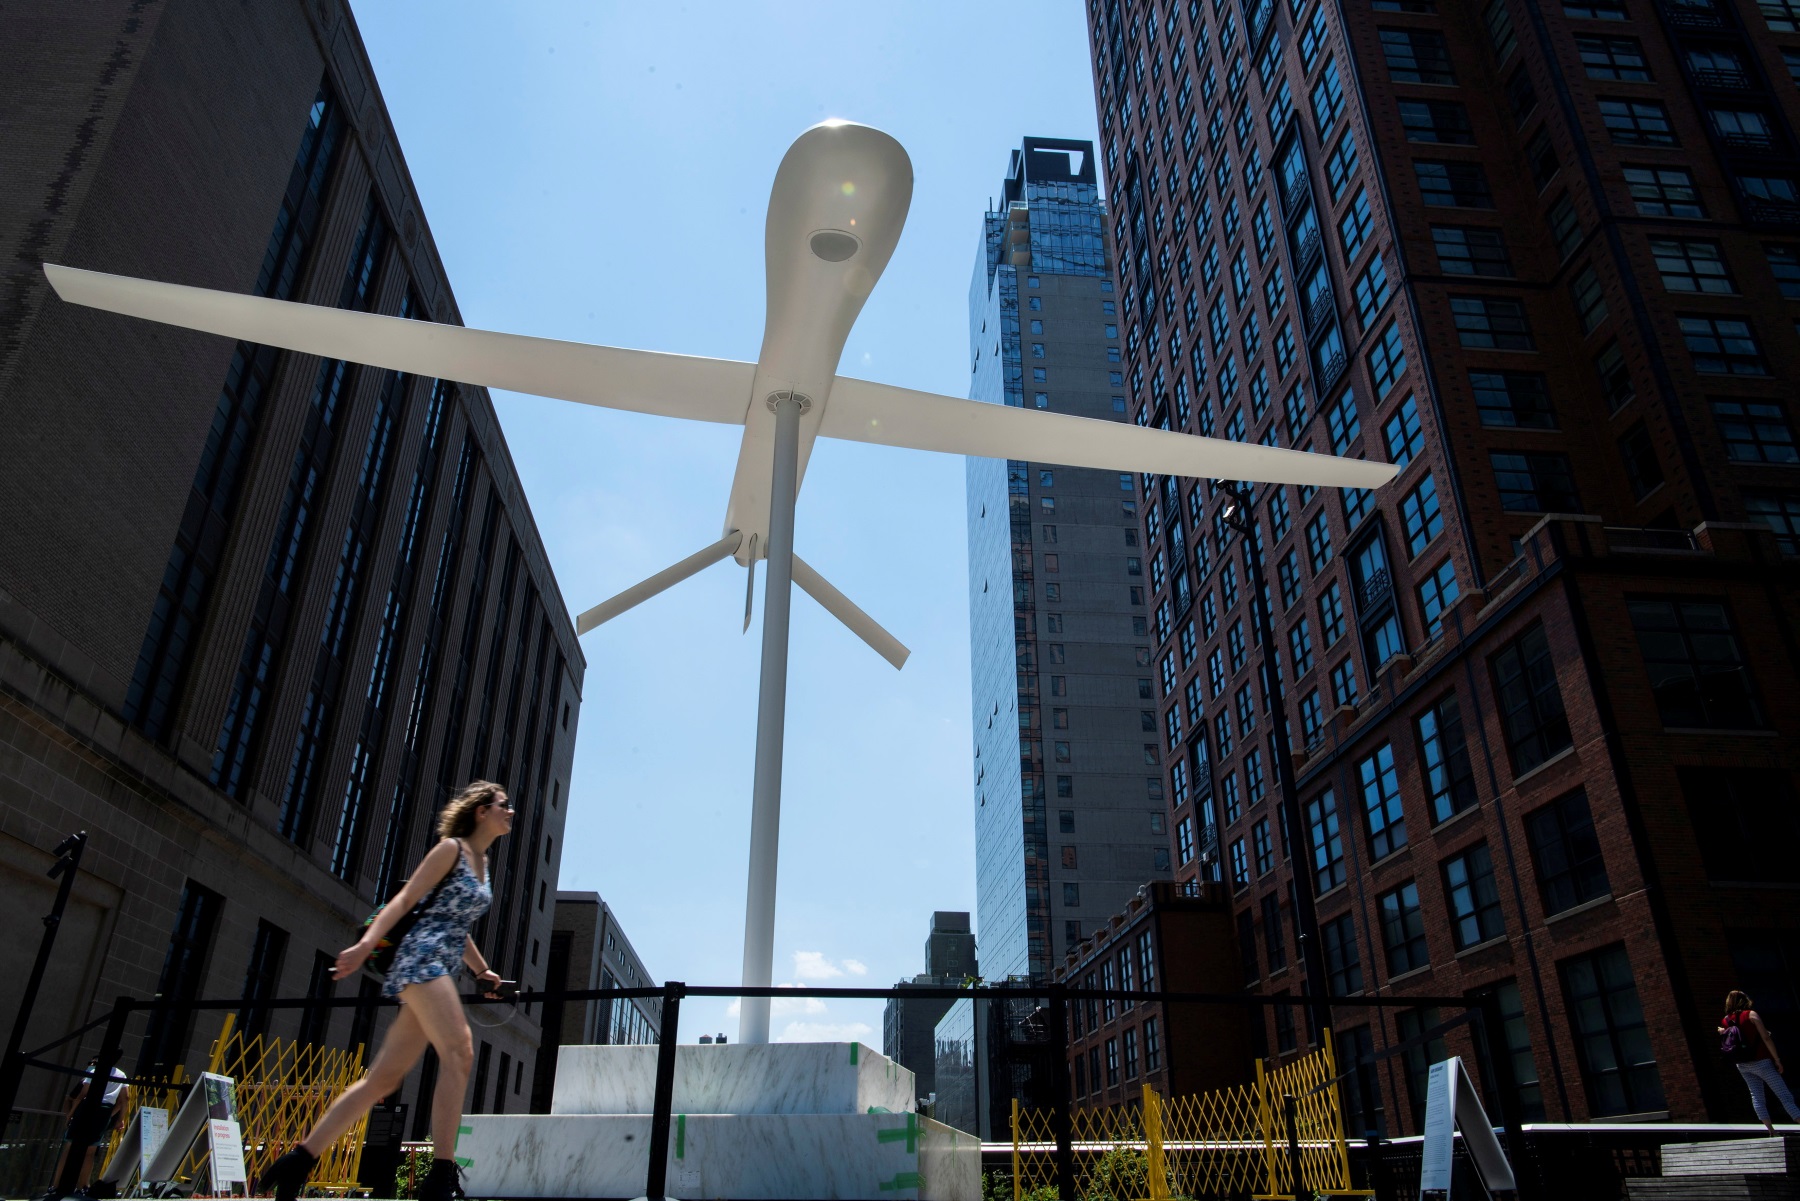 Νέα Υόρκη: Γιγαντιαίο, απειλητικό λευκό γλυπτό  αναπαριστά πολεμικό drone (pic)